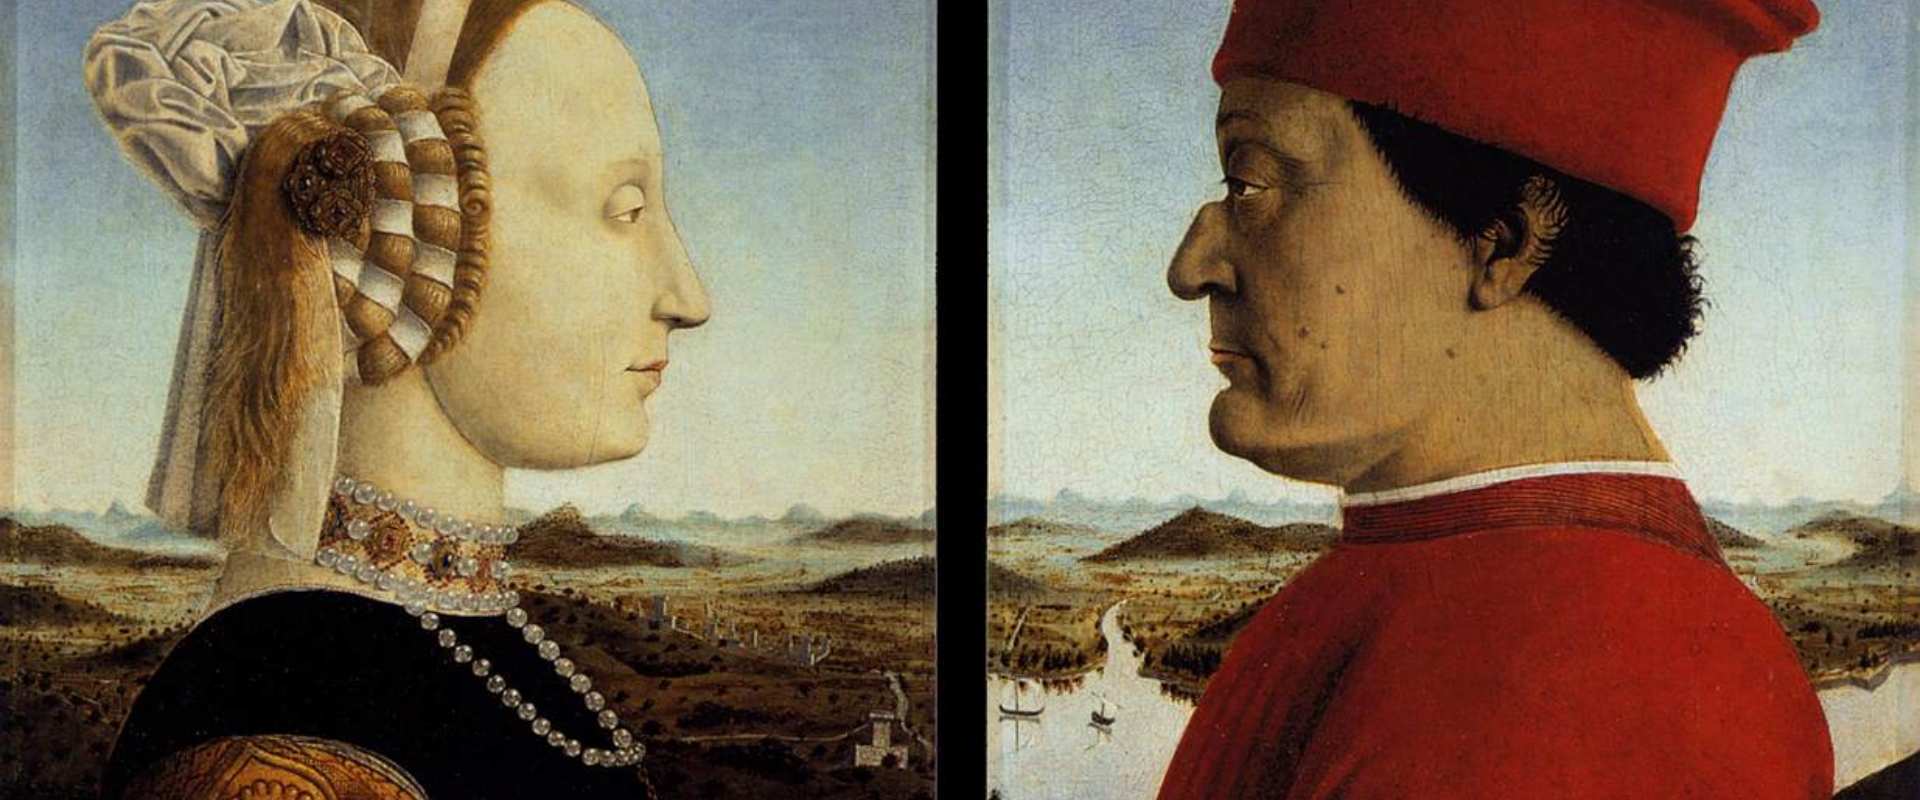 Le double portrait des ducs d’Urbino (Federico da Montefeltro et Battista Sforza), Piero della Francesca